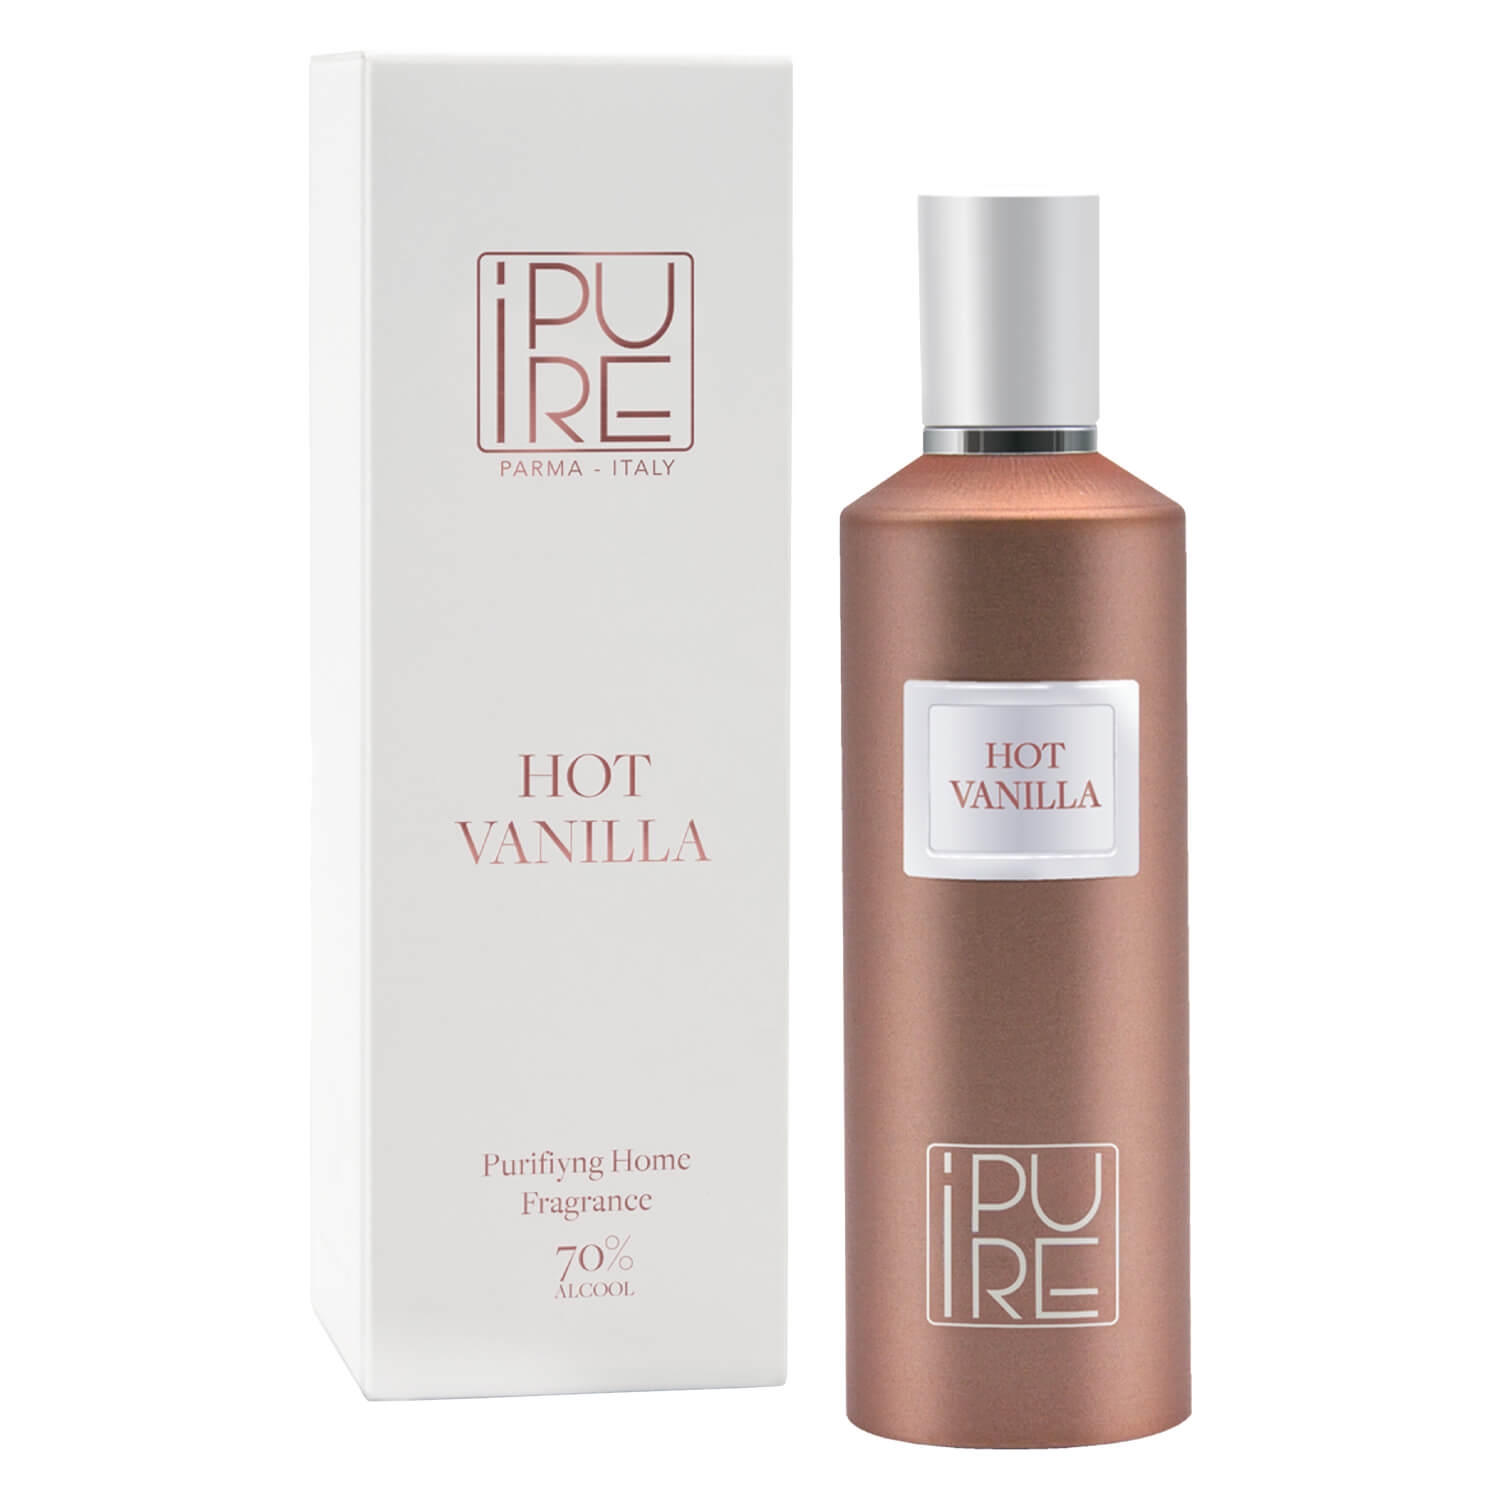 Produktbild von iPURE - Purifying Home Fragrance Spray HOT VANILLA